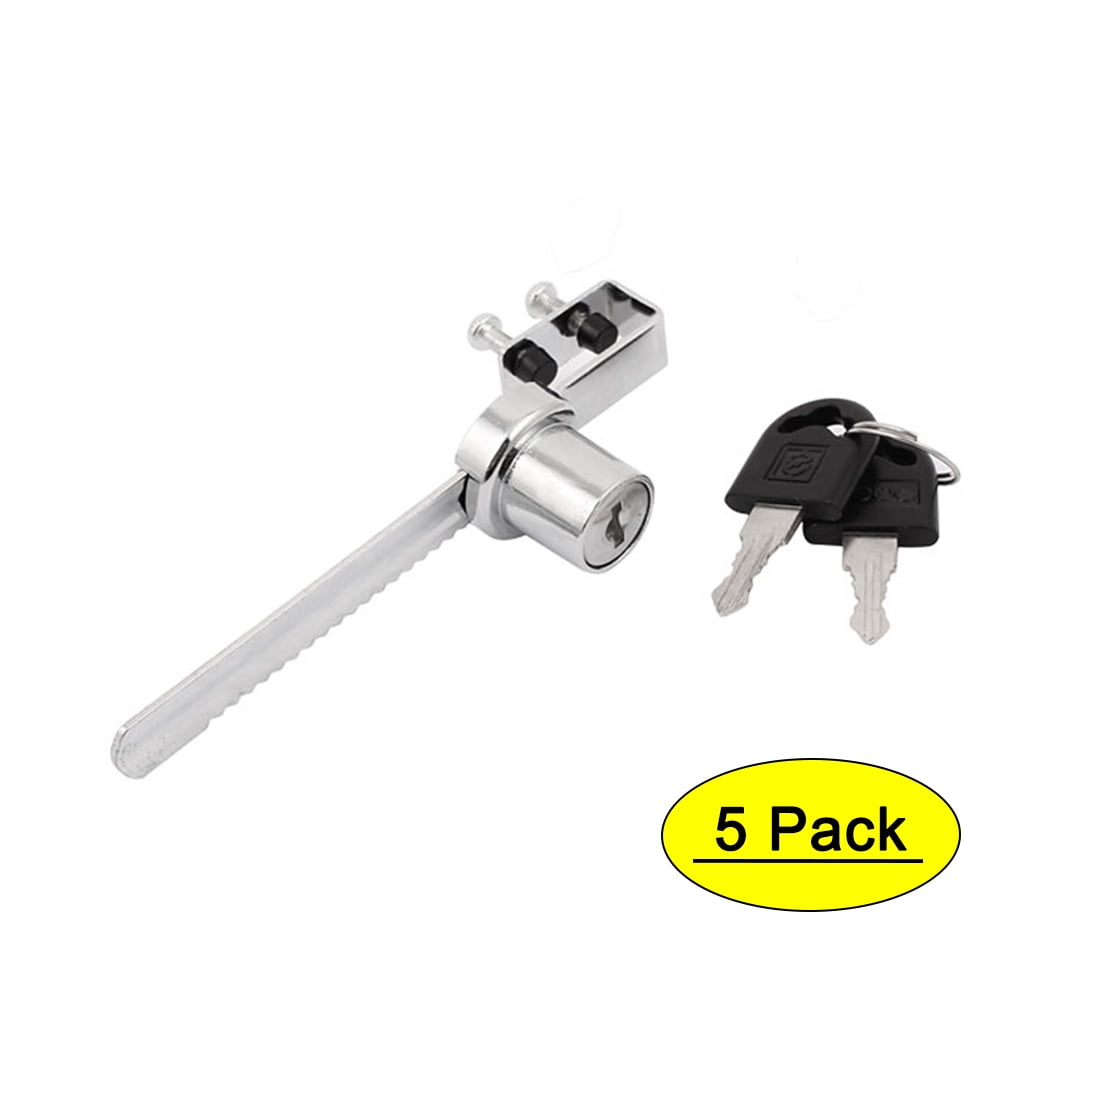 Knape & Vogt No 965 Adjustable Lock for Glass Sliding Door Showcase Display Case